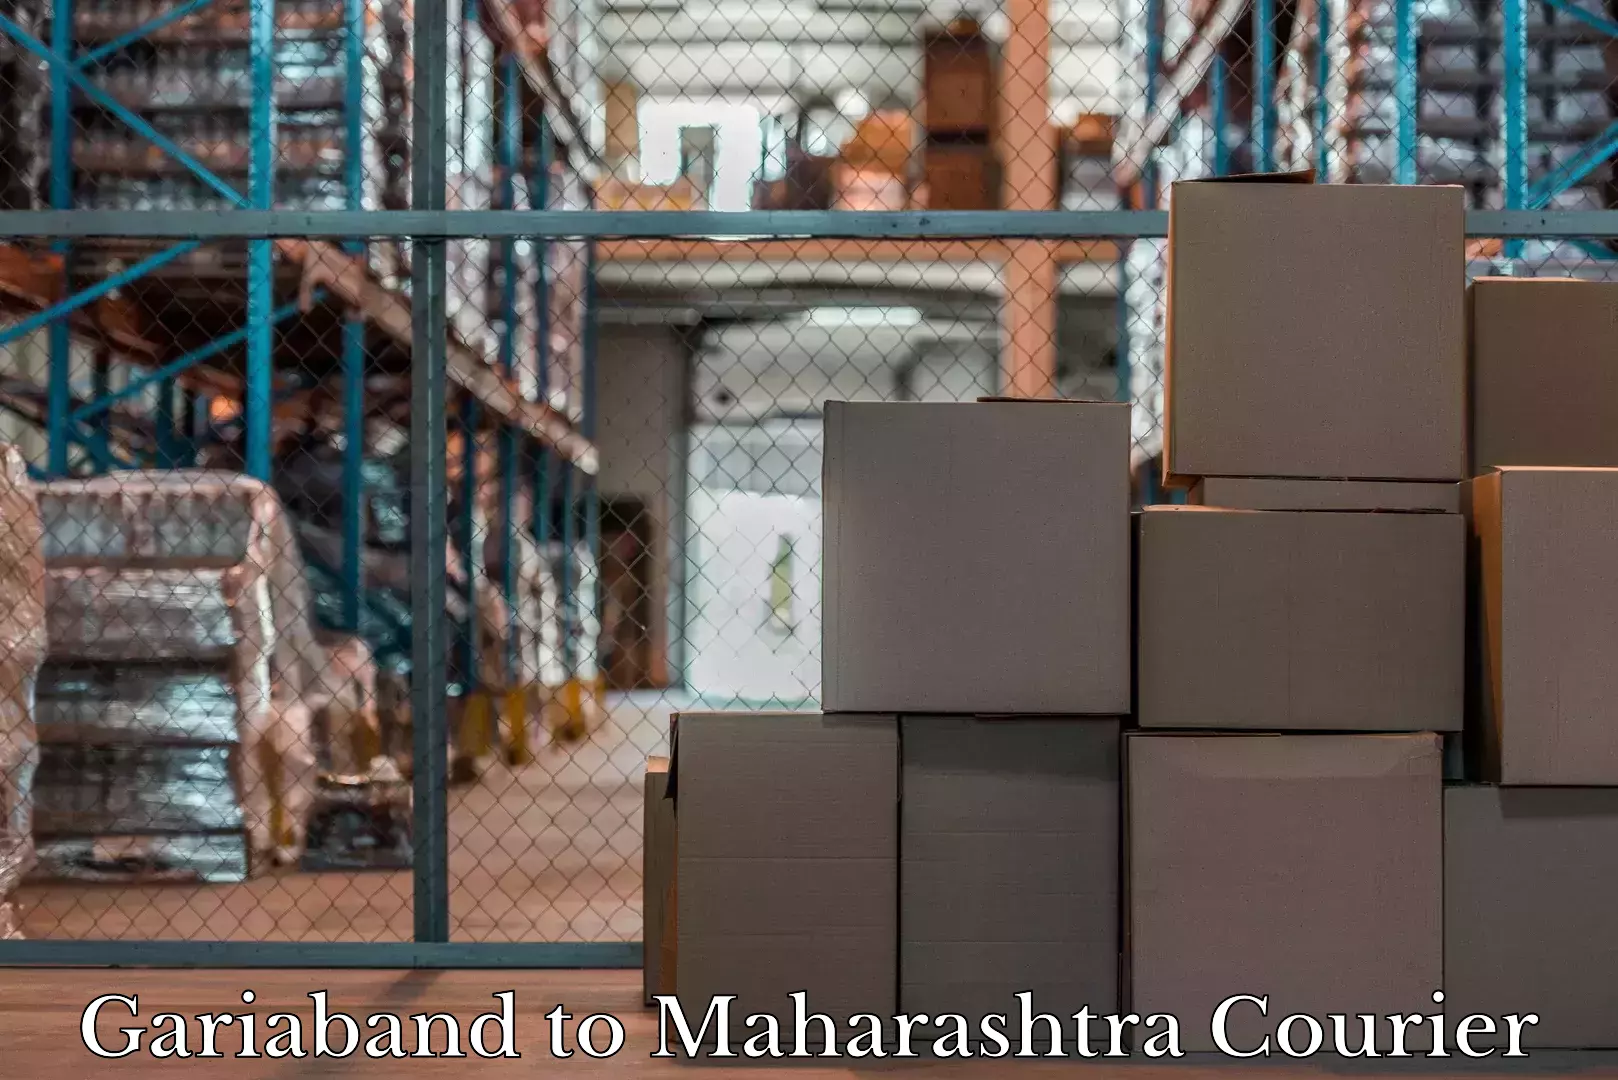 Baggage handling services Gariaband to Maharashtra